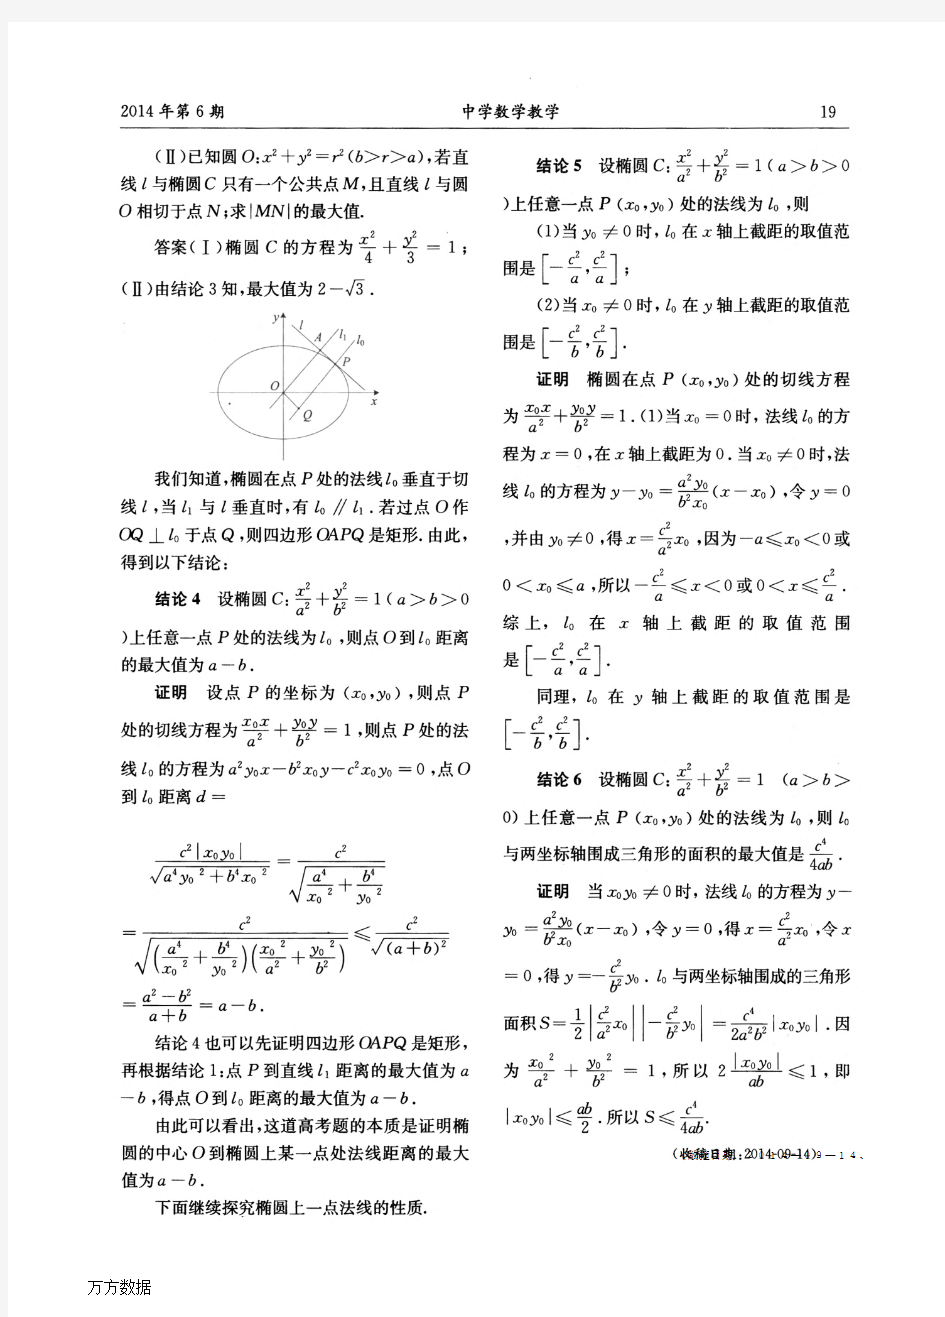 对一道2014年高考浙江解析几何题的探究